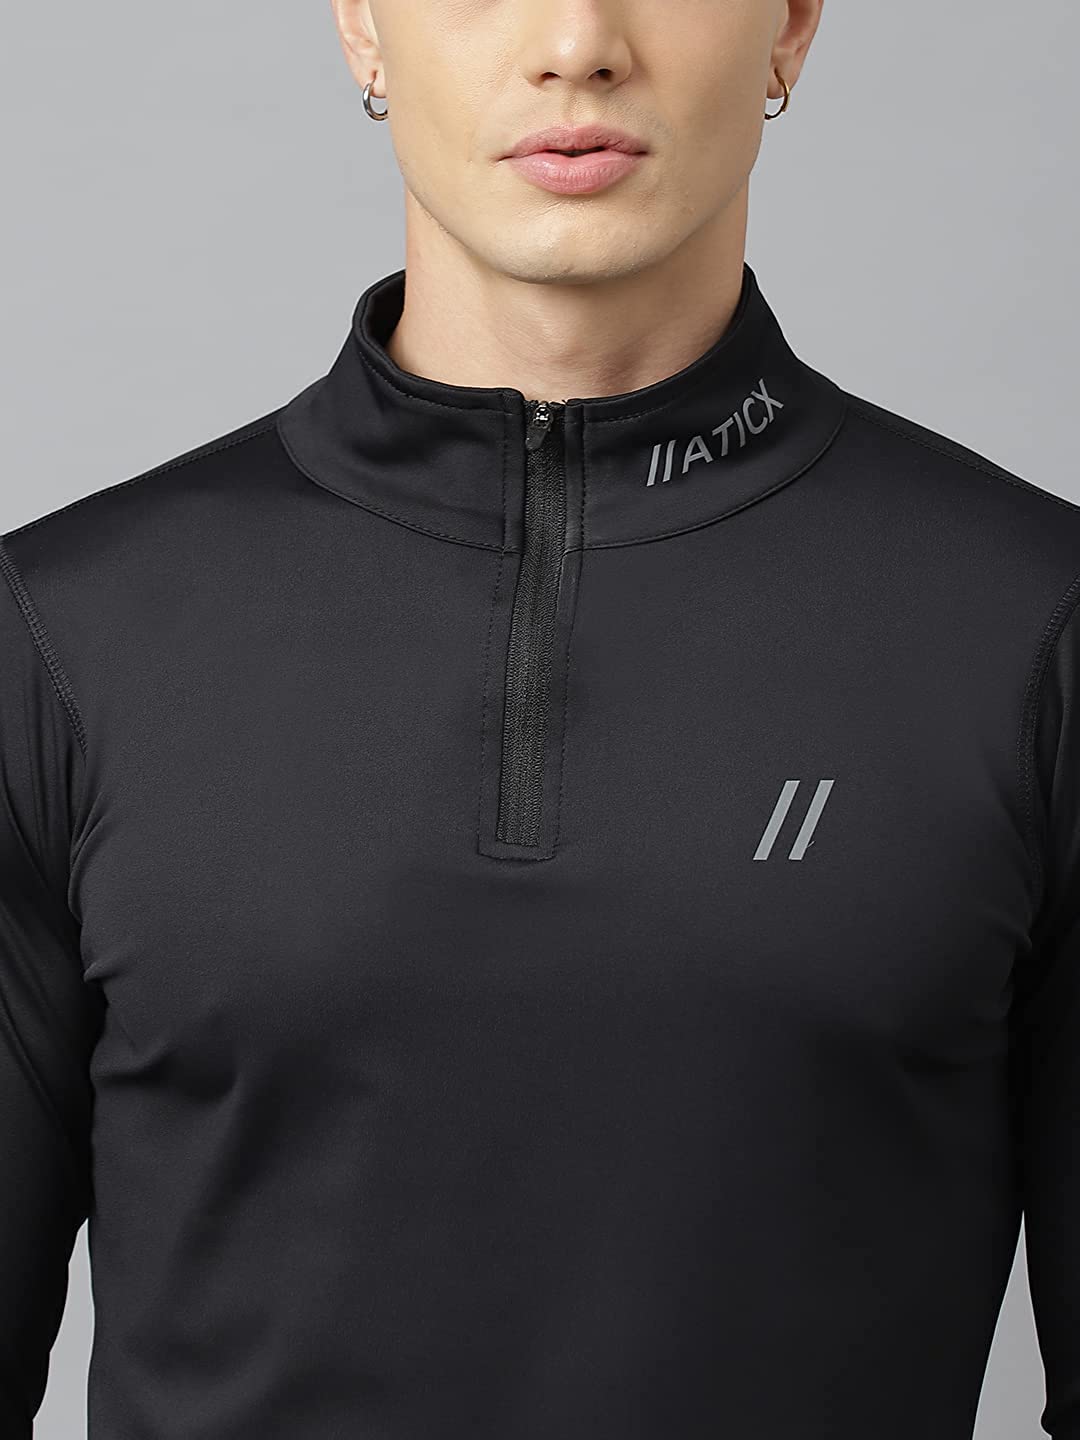 Men’s Slim Fit Polyester Full Sleeve T Shirt (Jet Black)